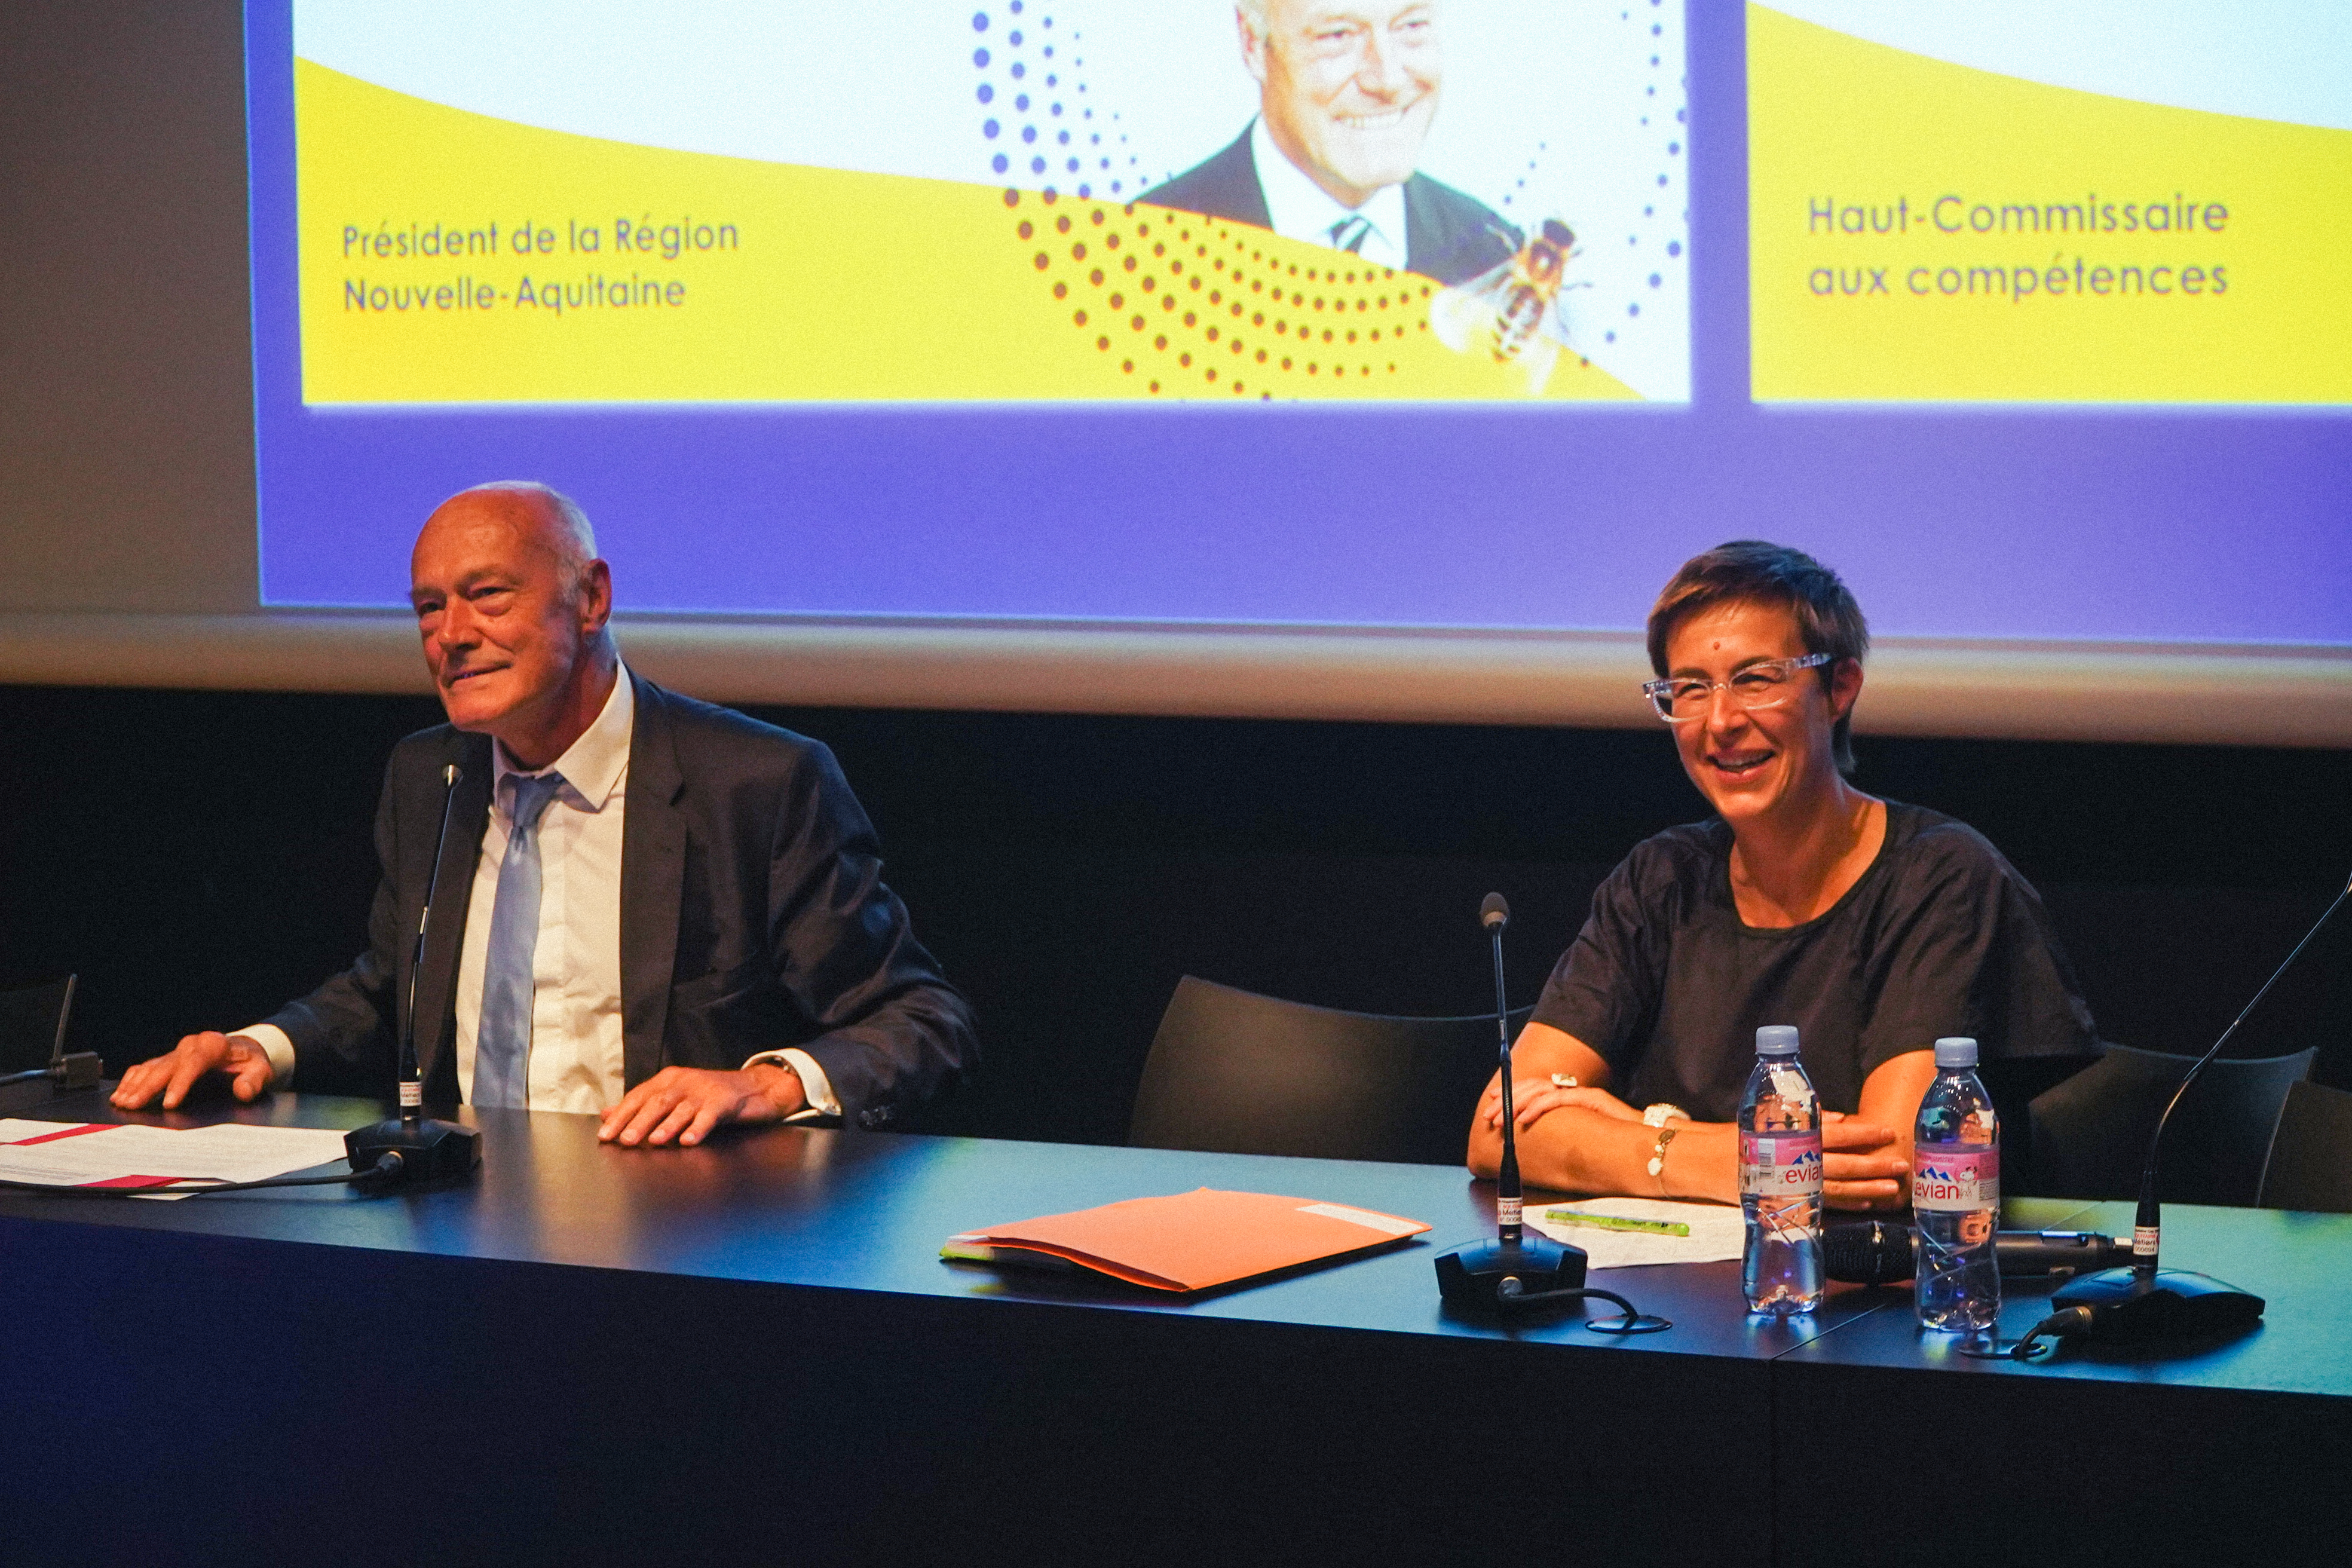 De gauche à droite : Alain Rousset, Président du conseil régional de Nouvelle-Aquitaine et Carine Seiler, Haut-commissaire aux compétences